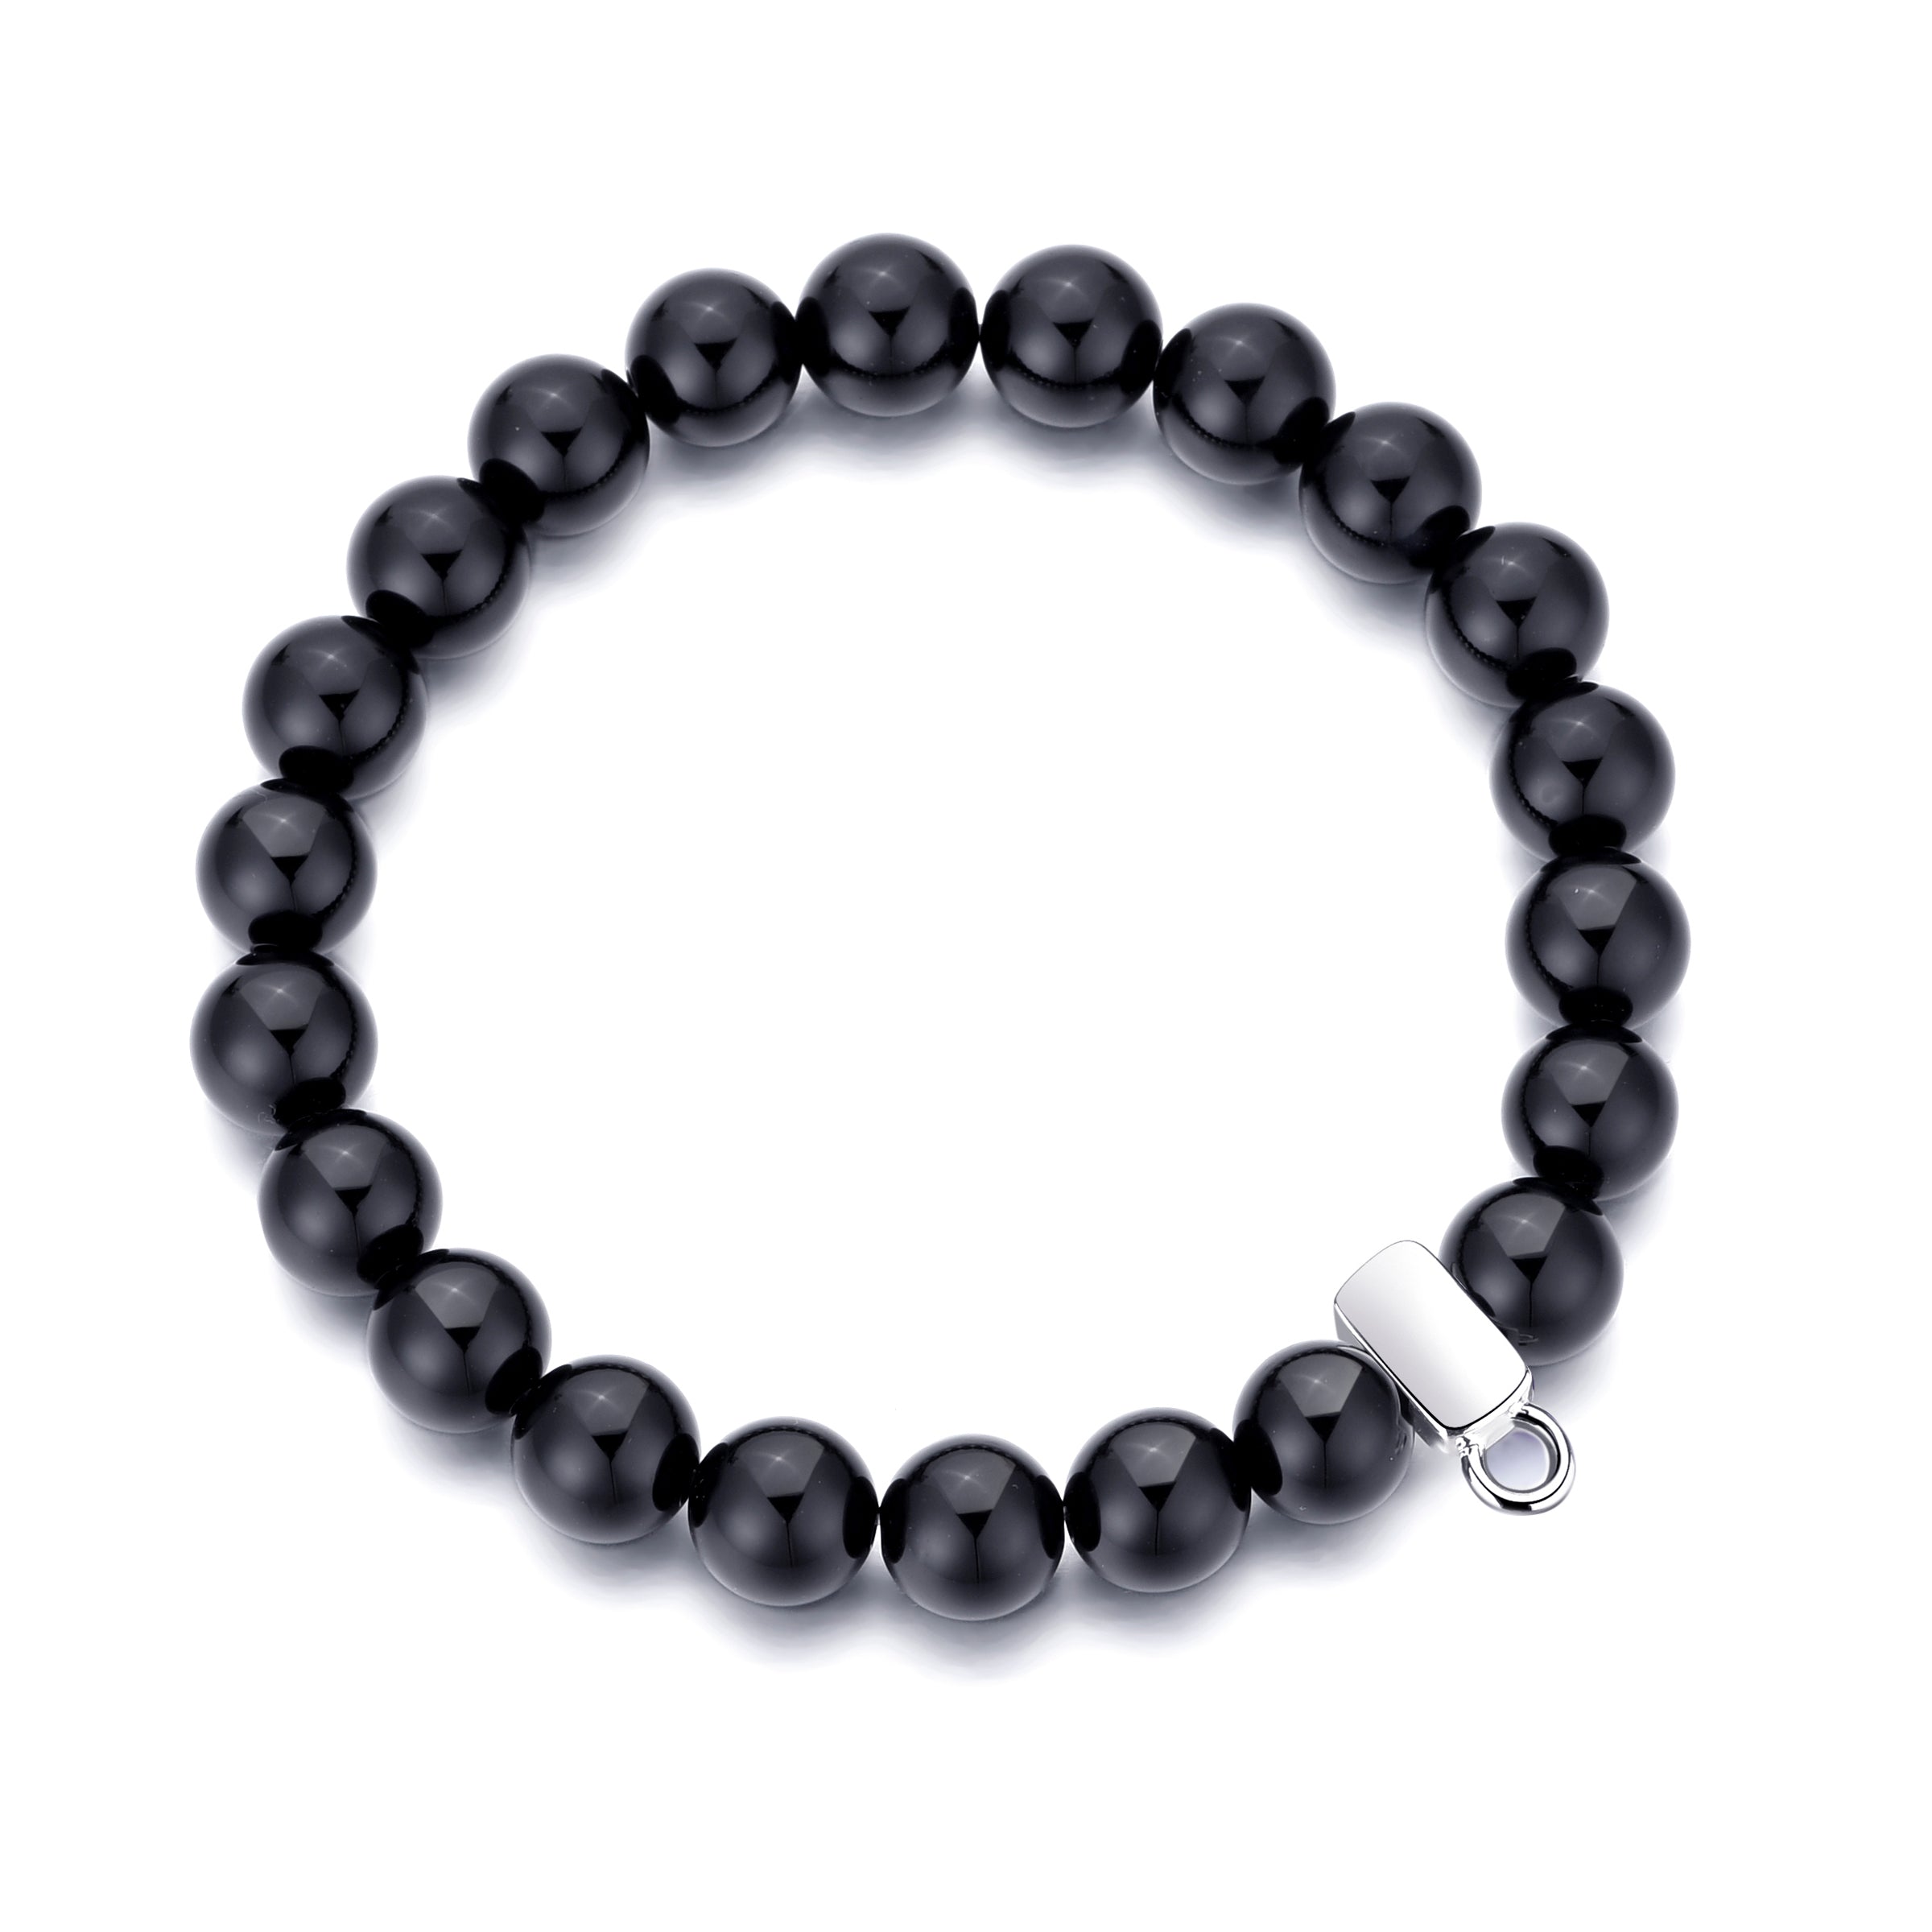 Black Onyx Gemstone Charm Stretch Bracelet by Philip Jones Jewellery